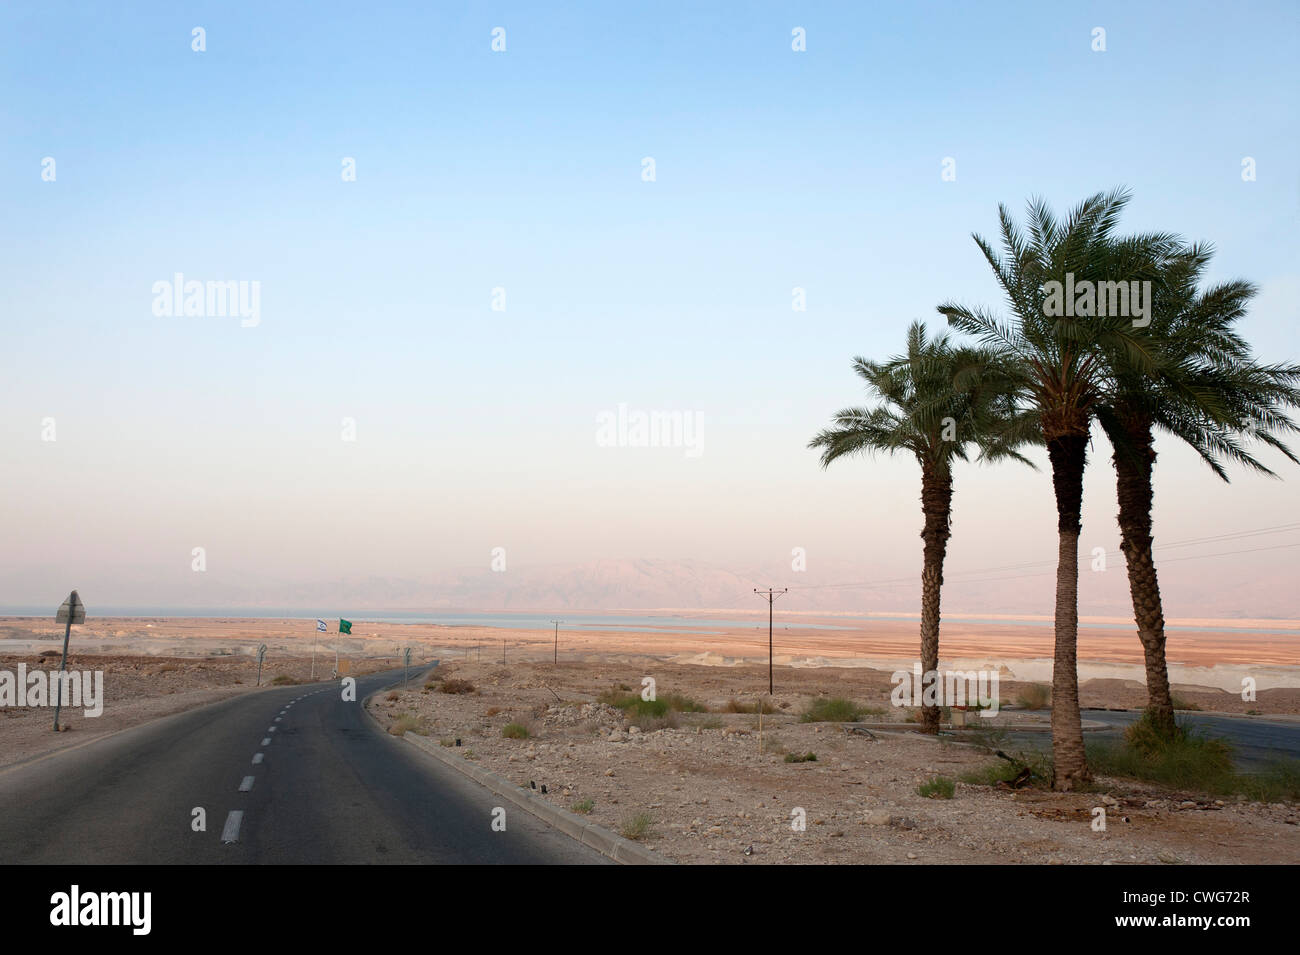 Una piegatura su strada attraverso il deserto con una vista del Mar Morto in distanza e palme sulla destra, Israele Foto Stock